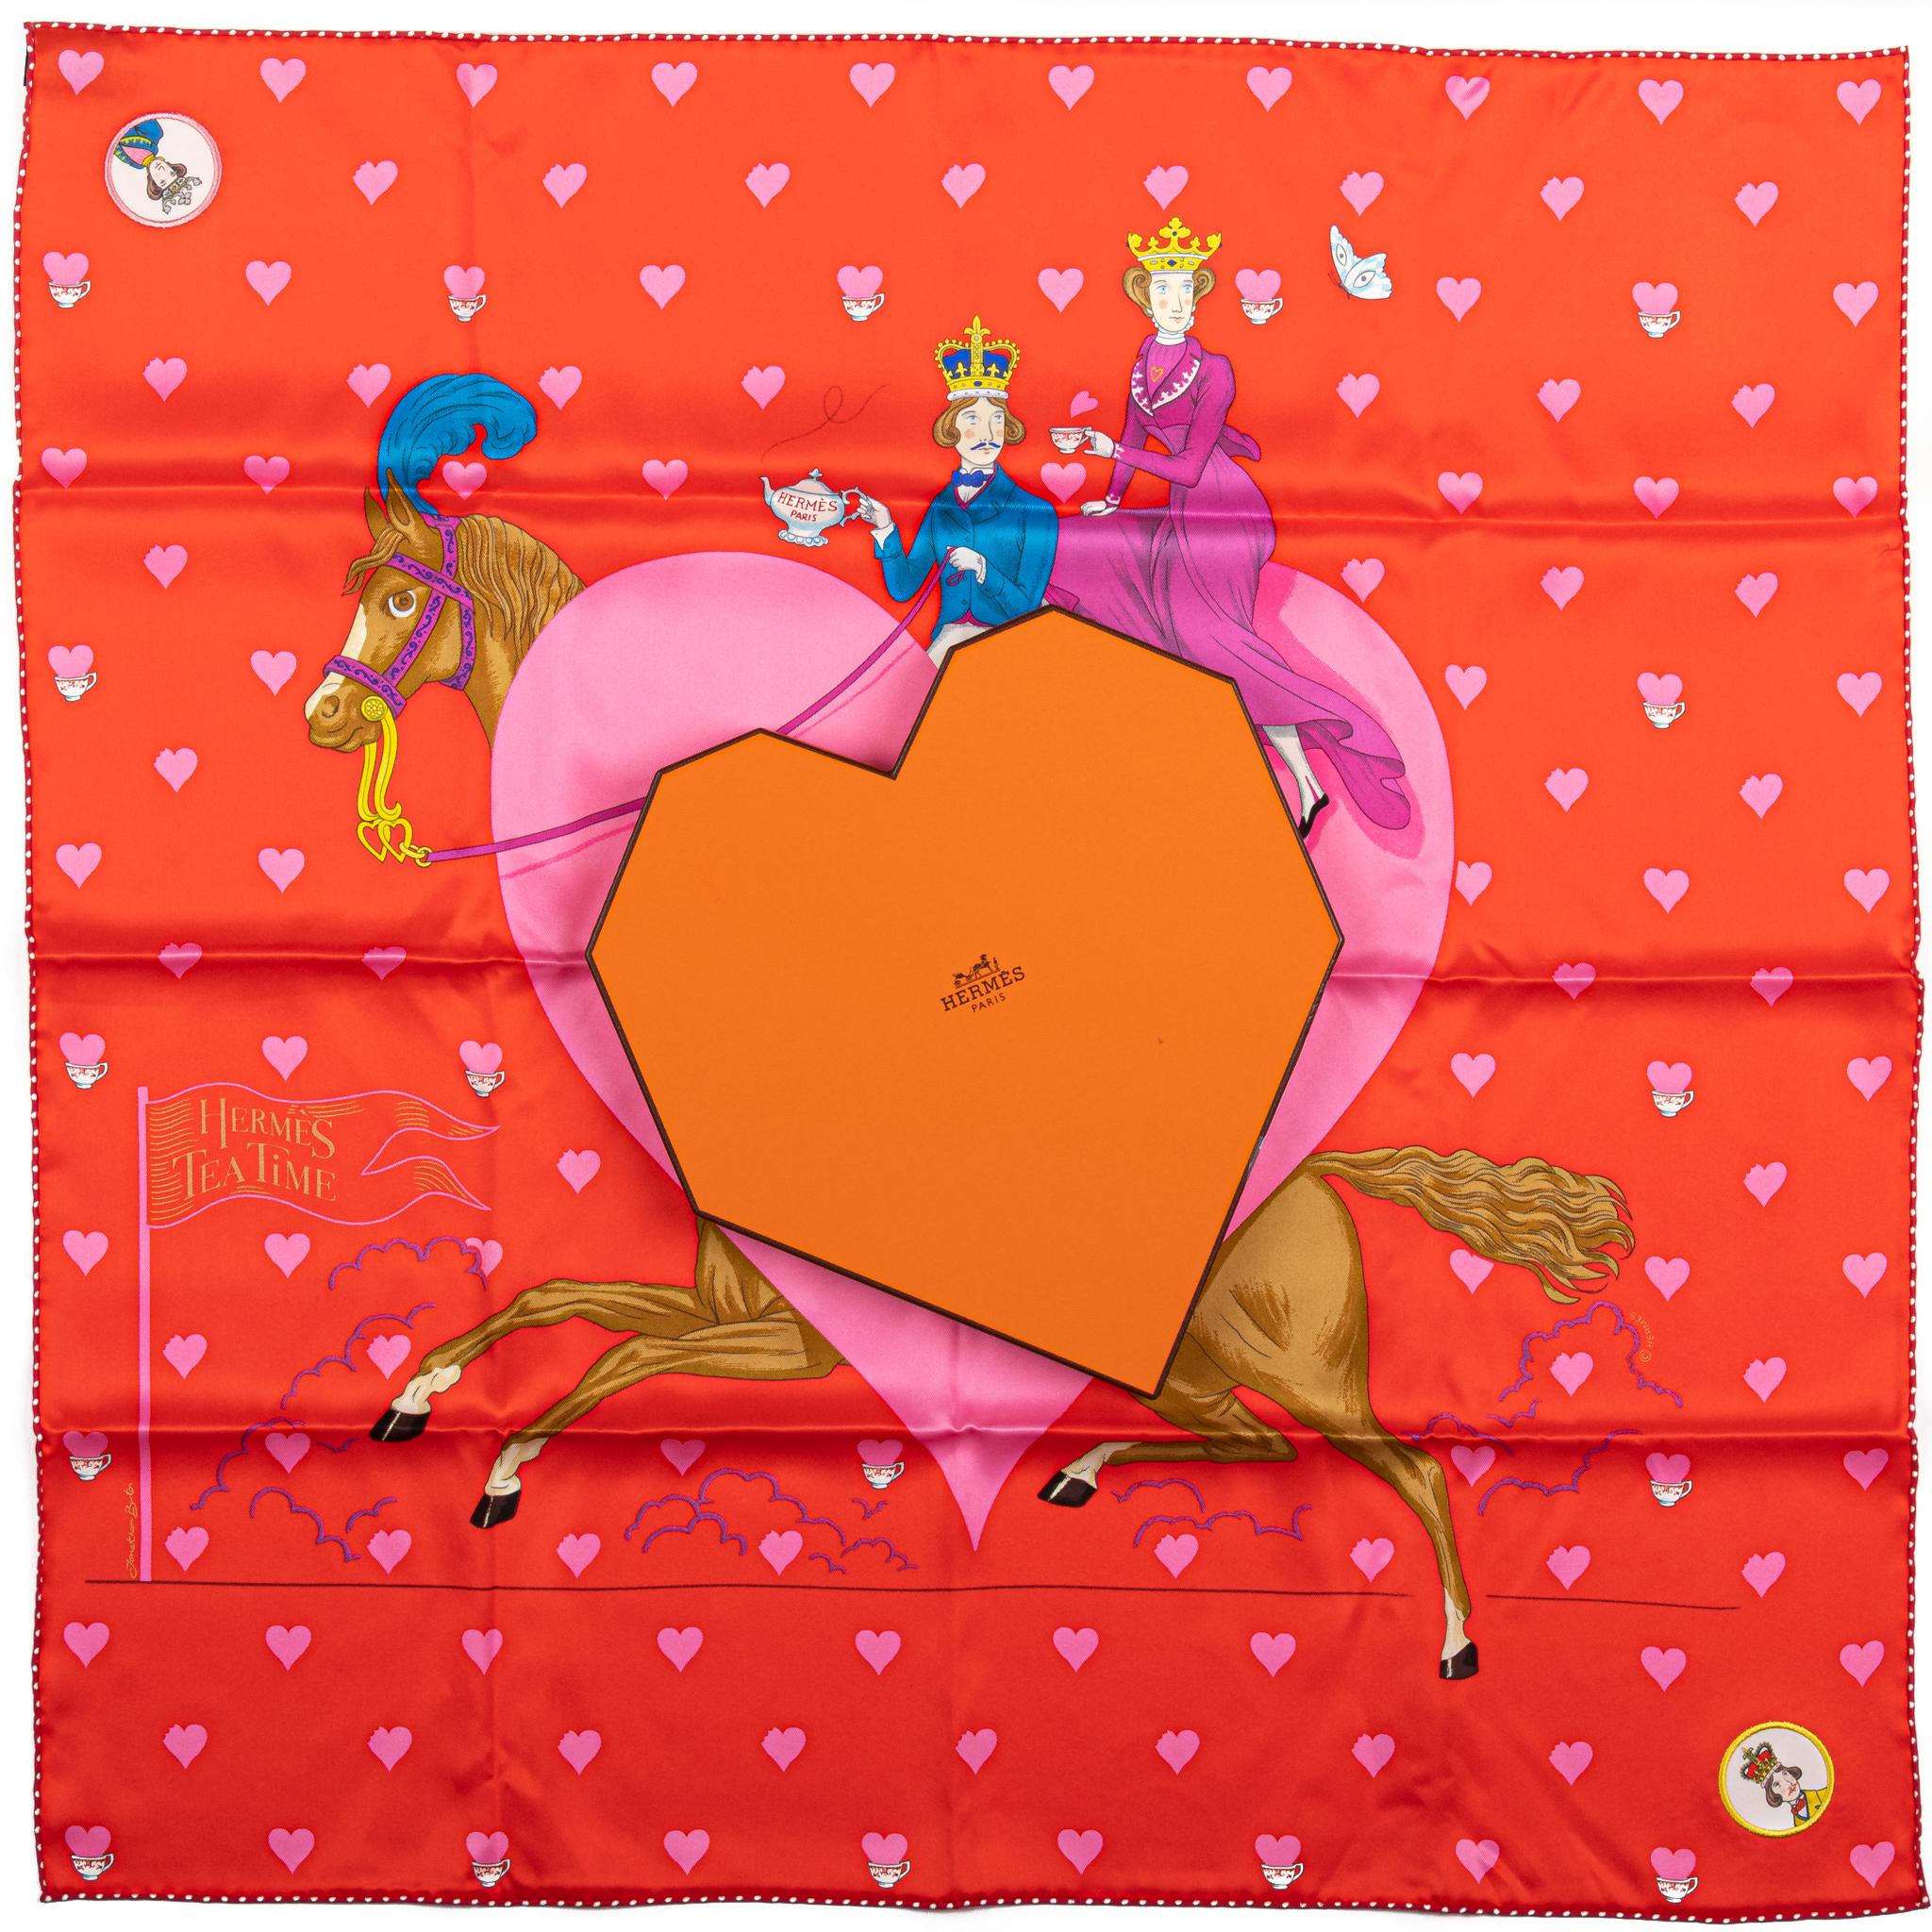 Hermès Carre Schal aus Kalbsleder in Rot-Rot. Im Mittelpunkt steht das Bild eines Pferdes, das einen Prinzen und eine Prinzessin trägt. Der Schal ist aus Seide und wird mit der Originalverpackung in Form eines Herzens geliefert.